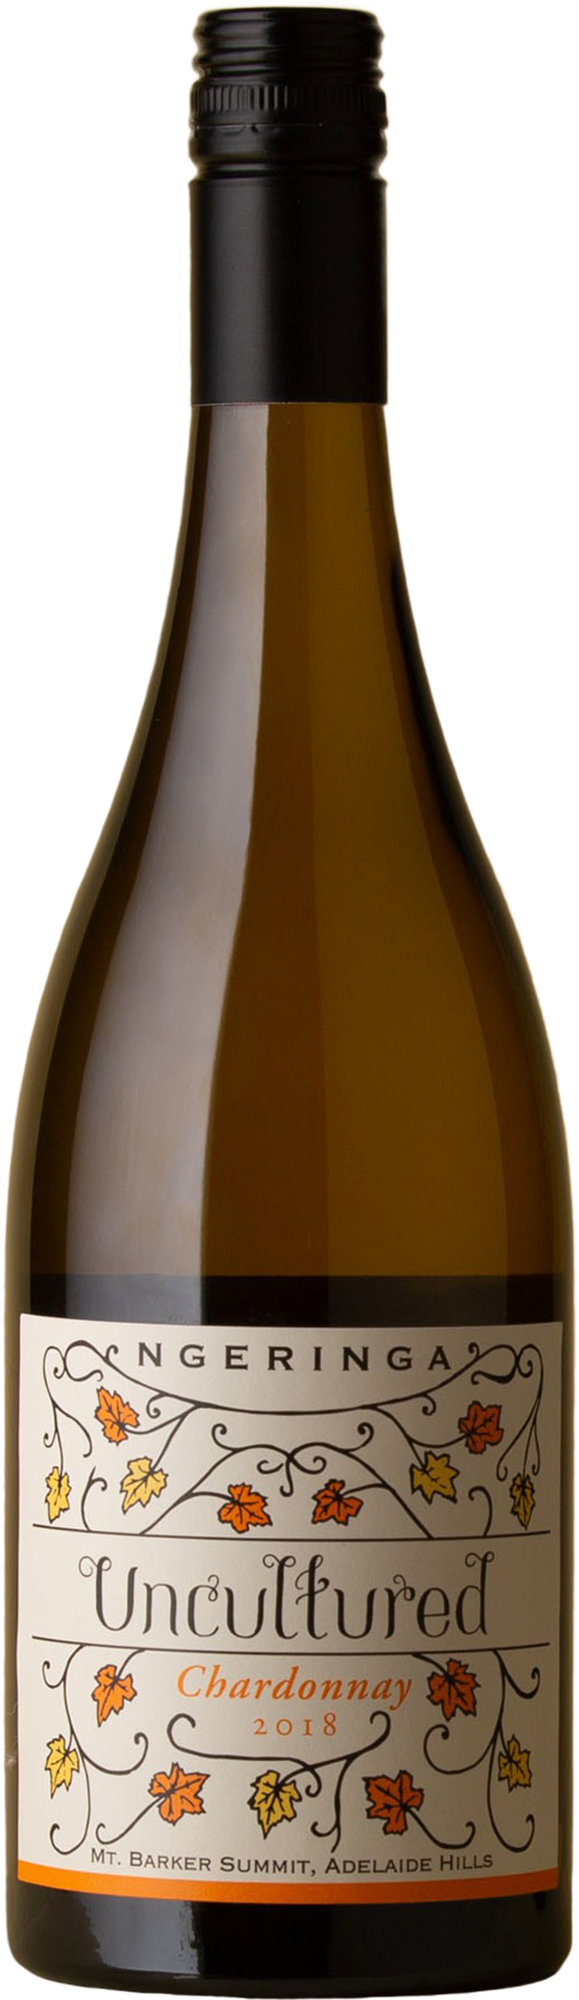 Ngeringa - Uncultured Chardonnay 2018 White Wine